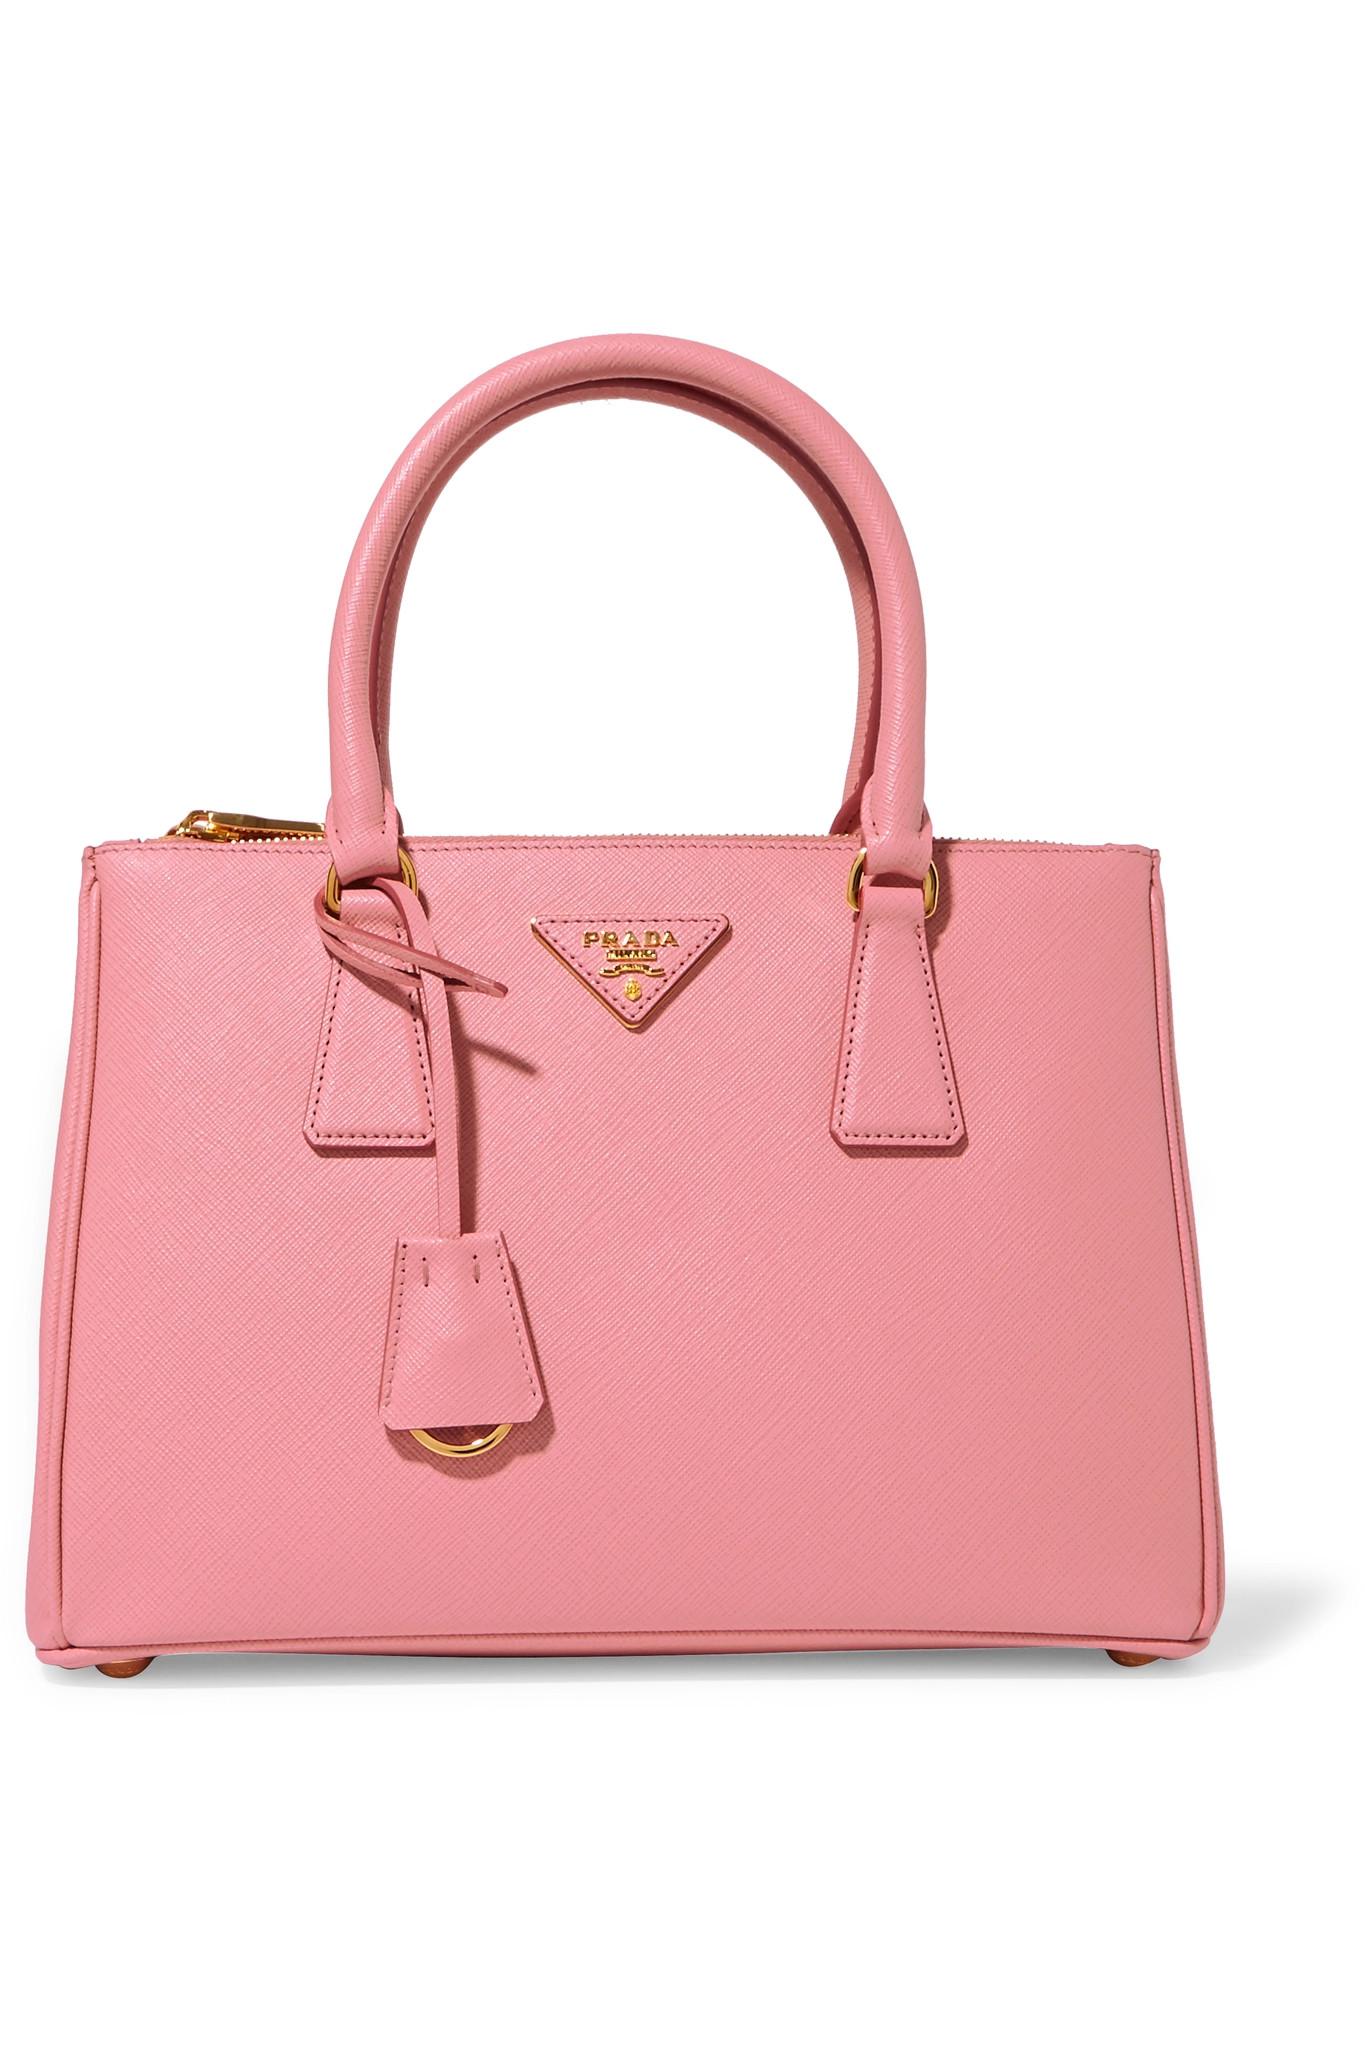 Lyst - Prada Galleria Medium Textured-Leather Tote in Pink